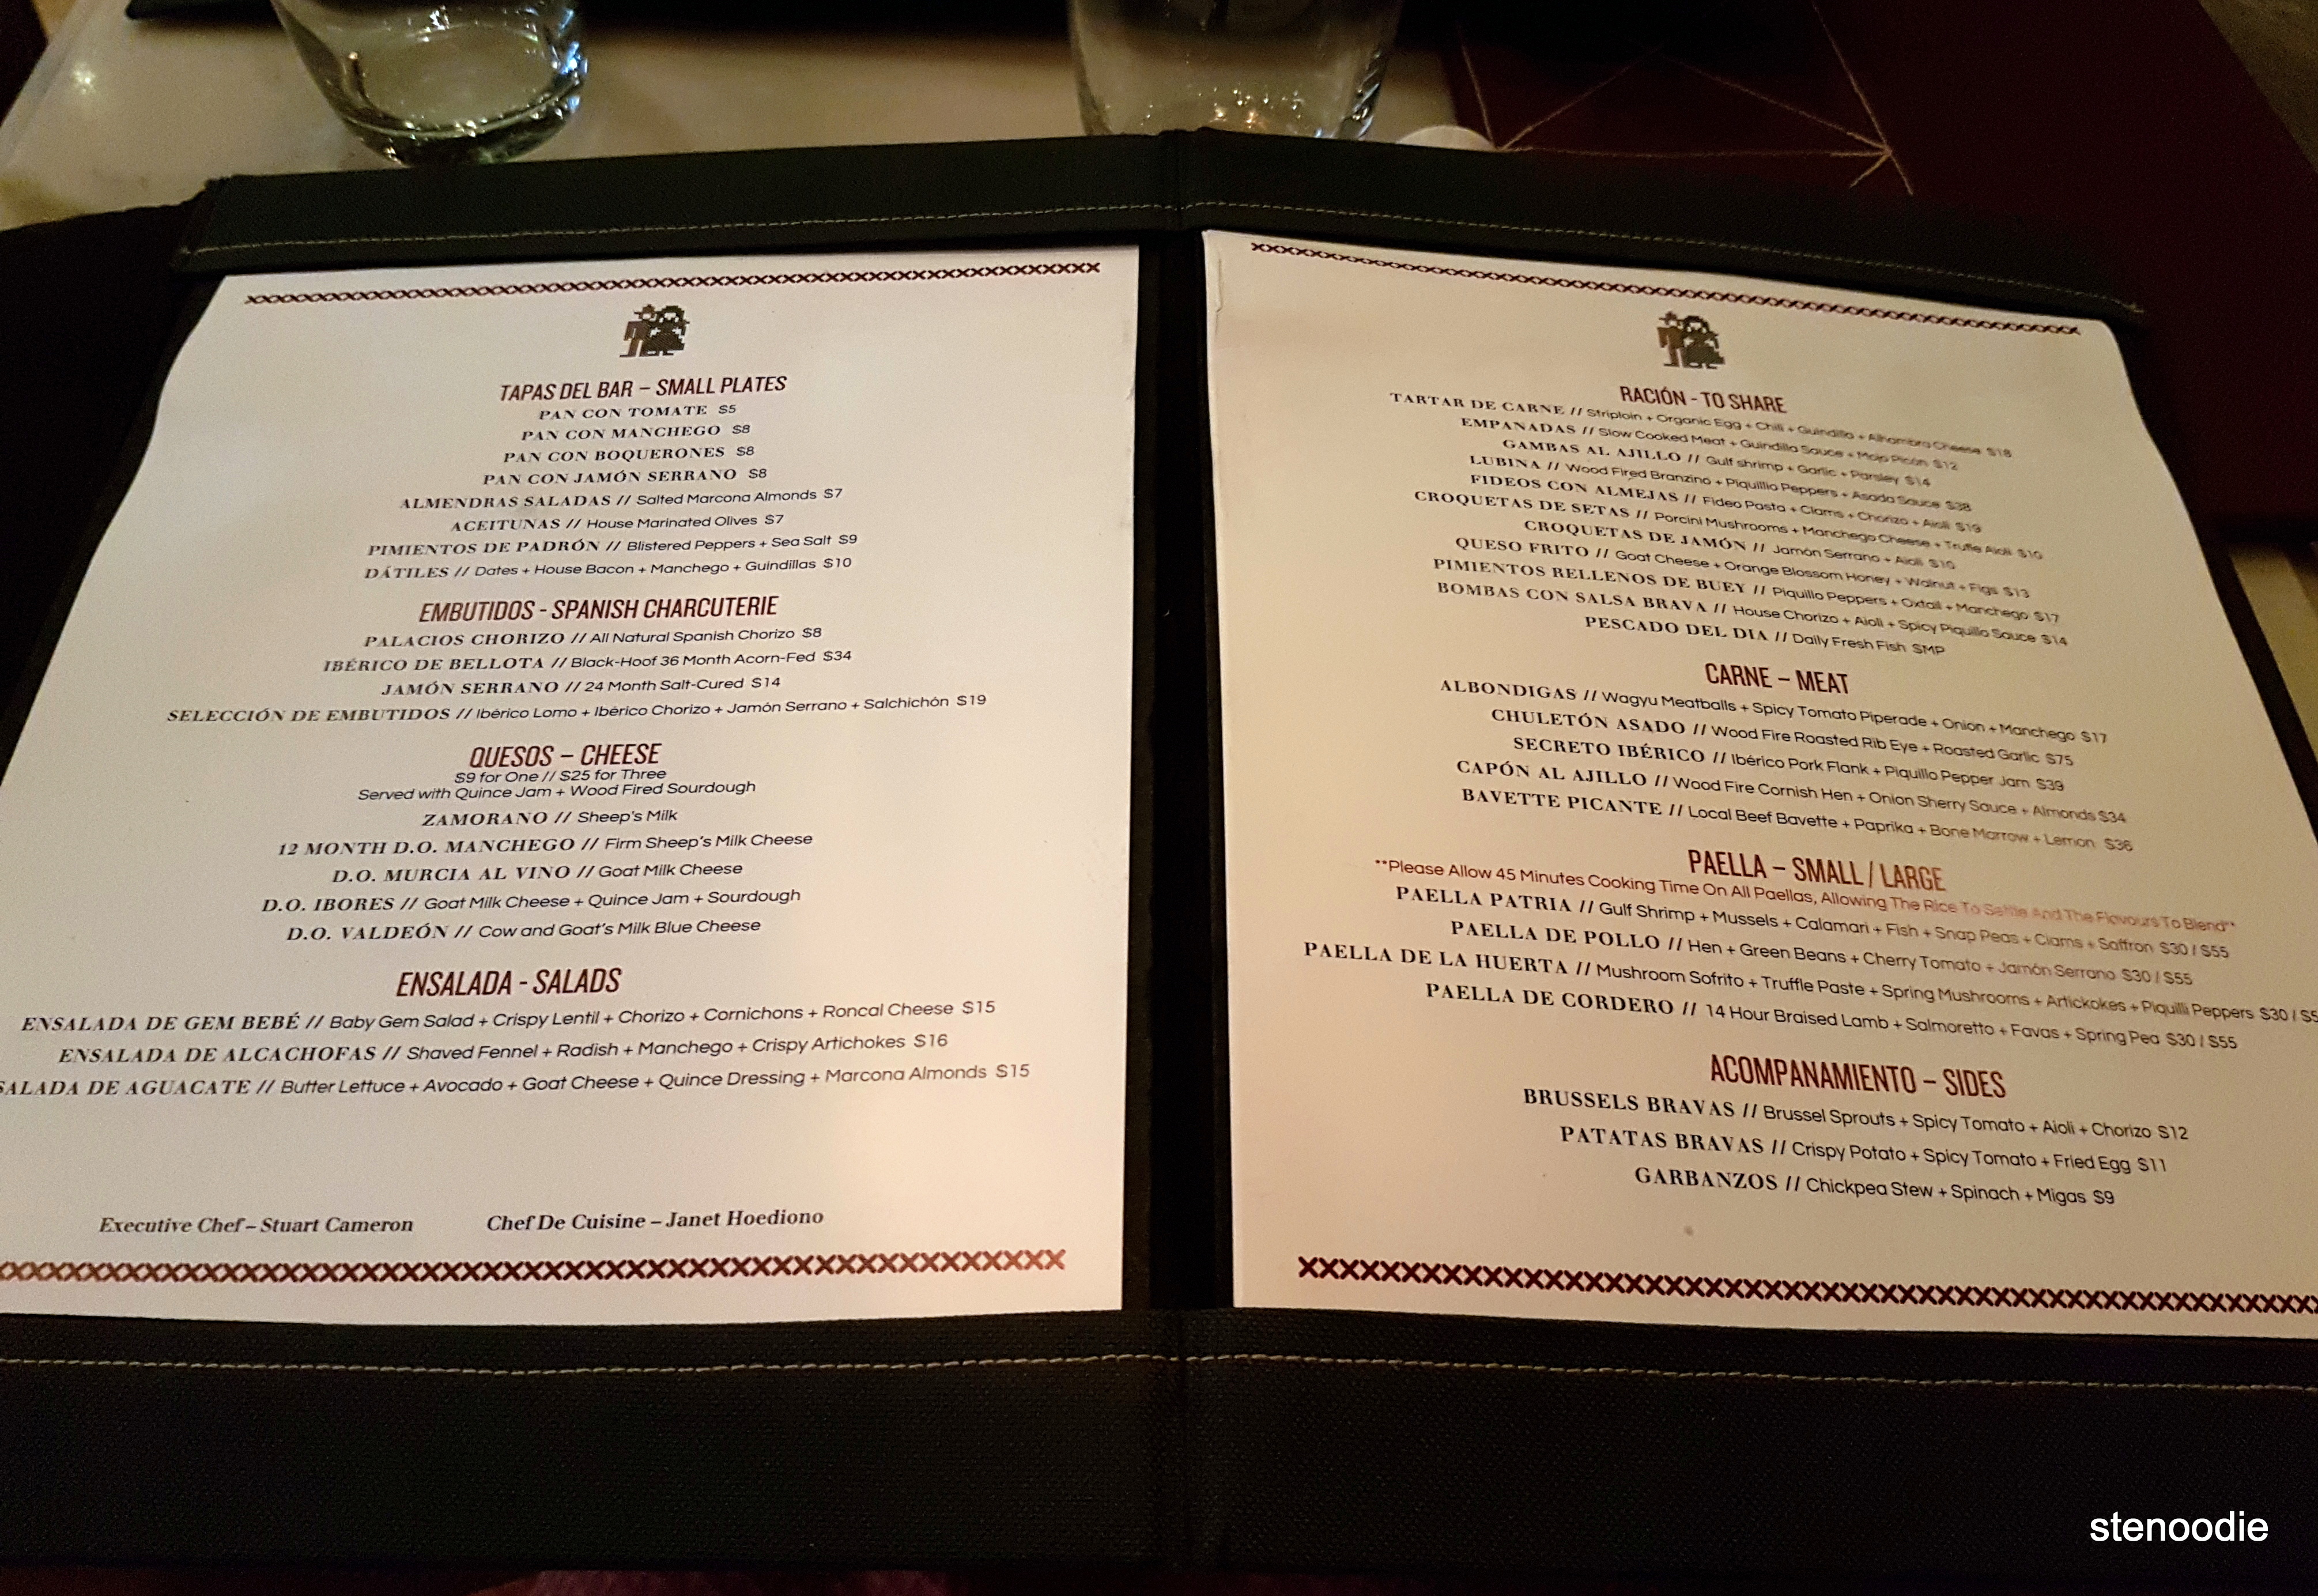 Patria dinner menu and prices